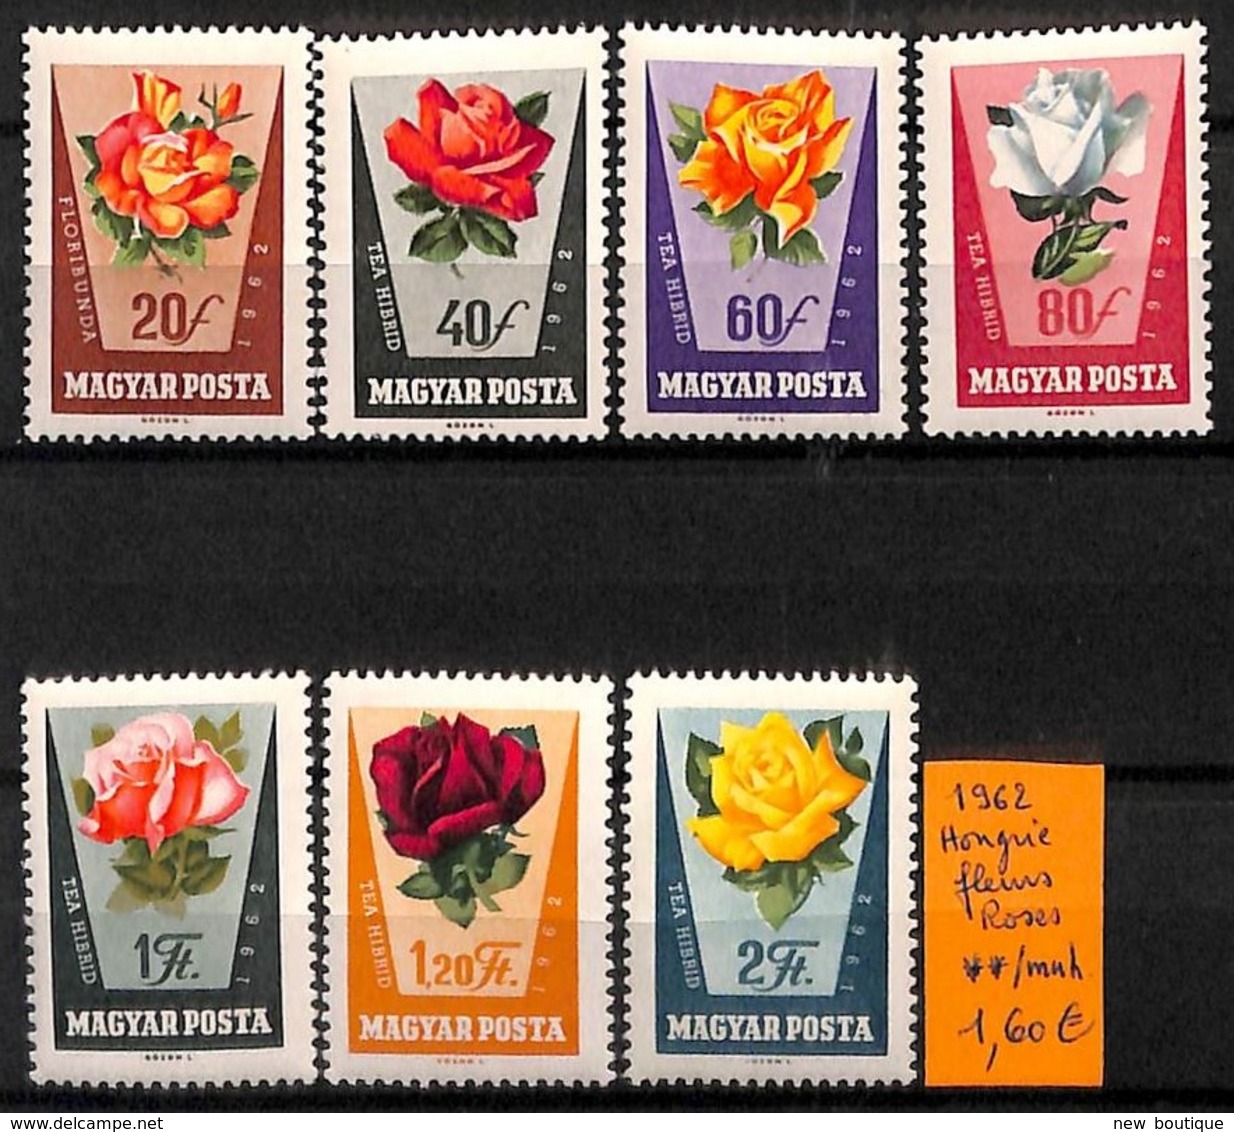 NB - [815088]Hongrie 1962 -  Fleurs, Rose, Nature - Roses